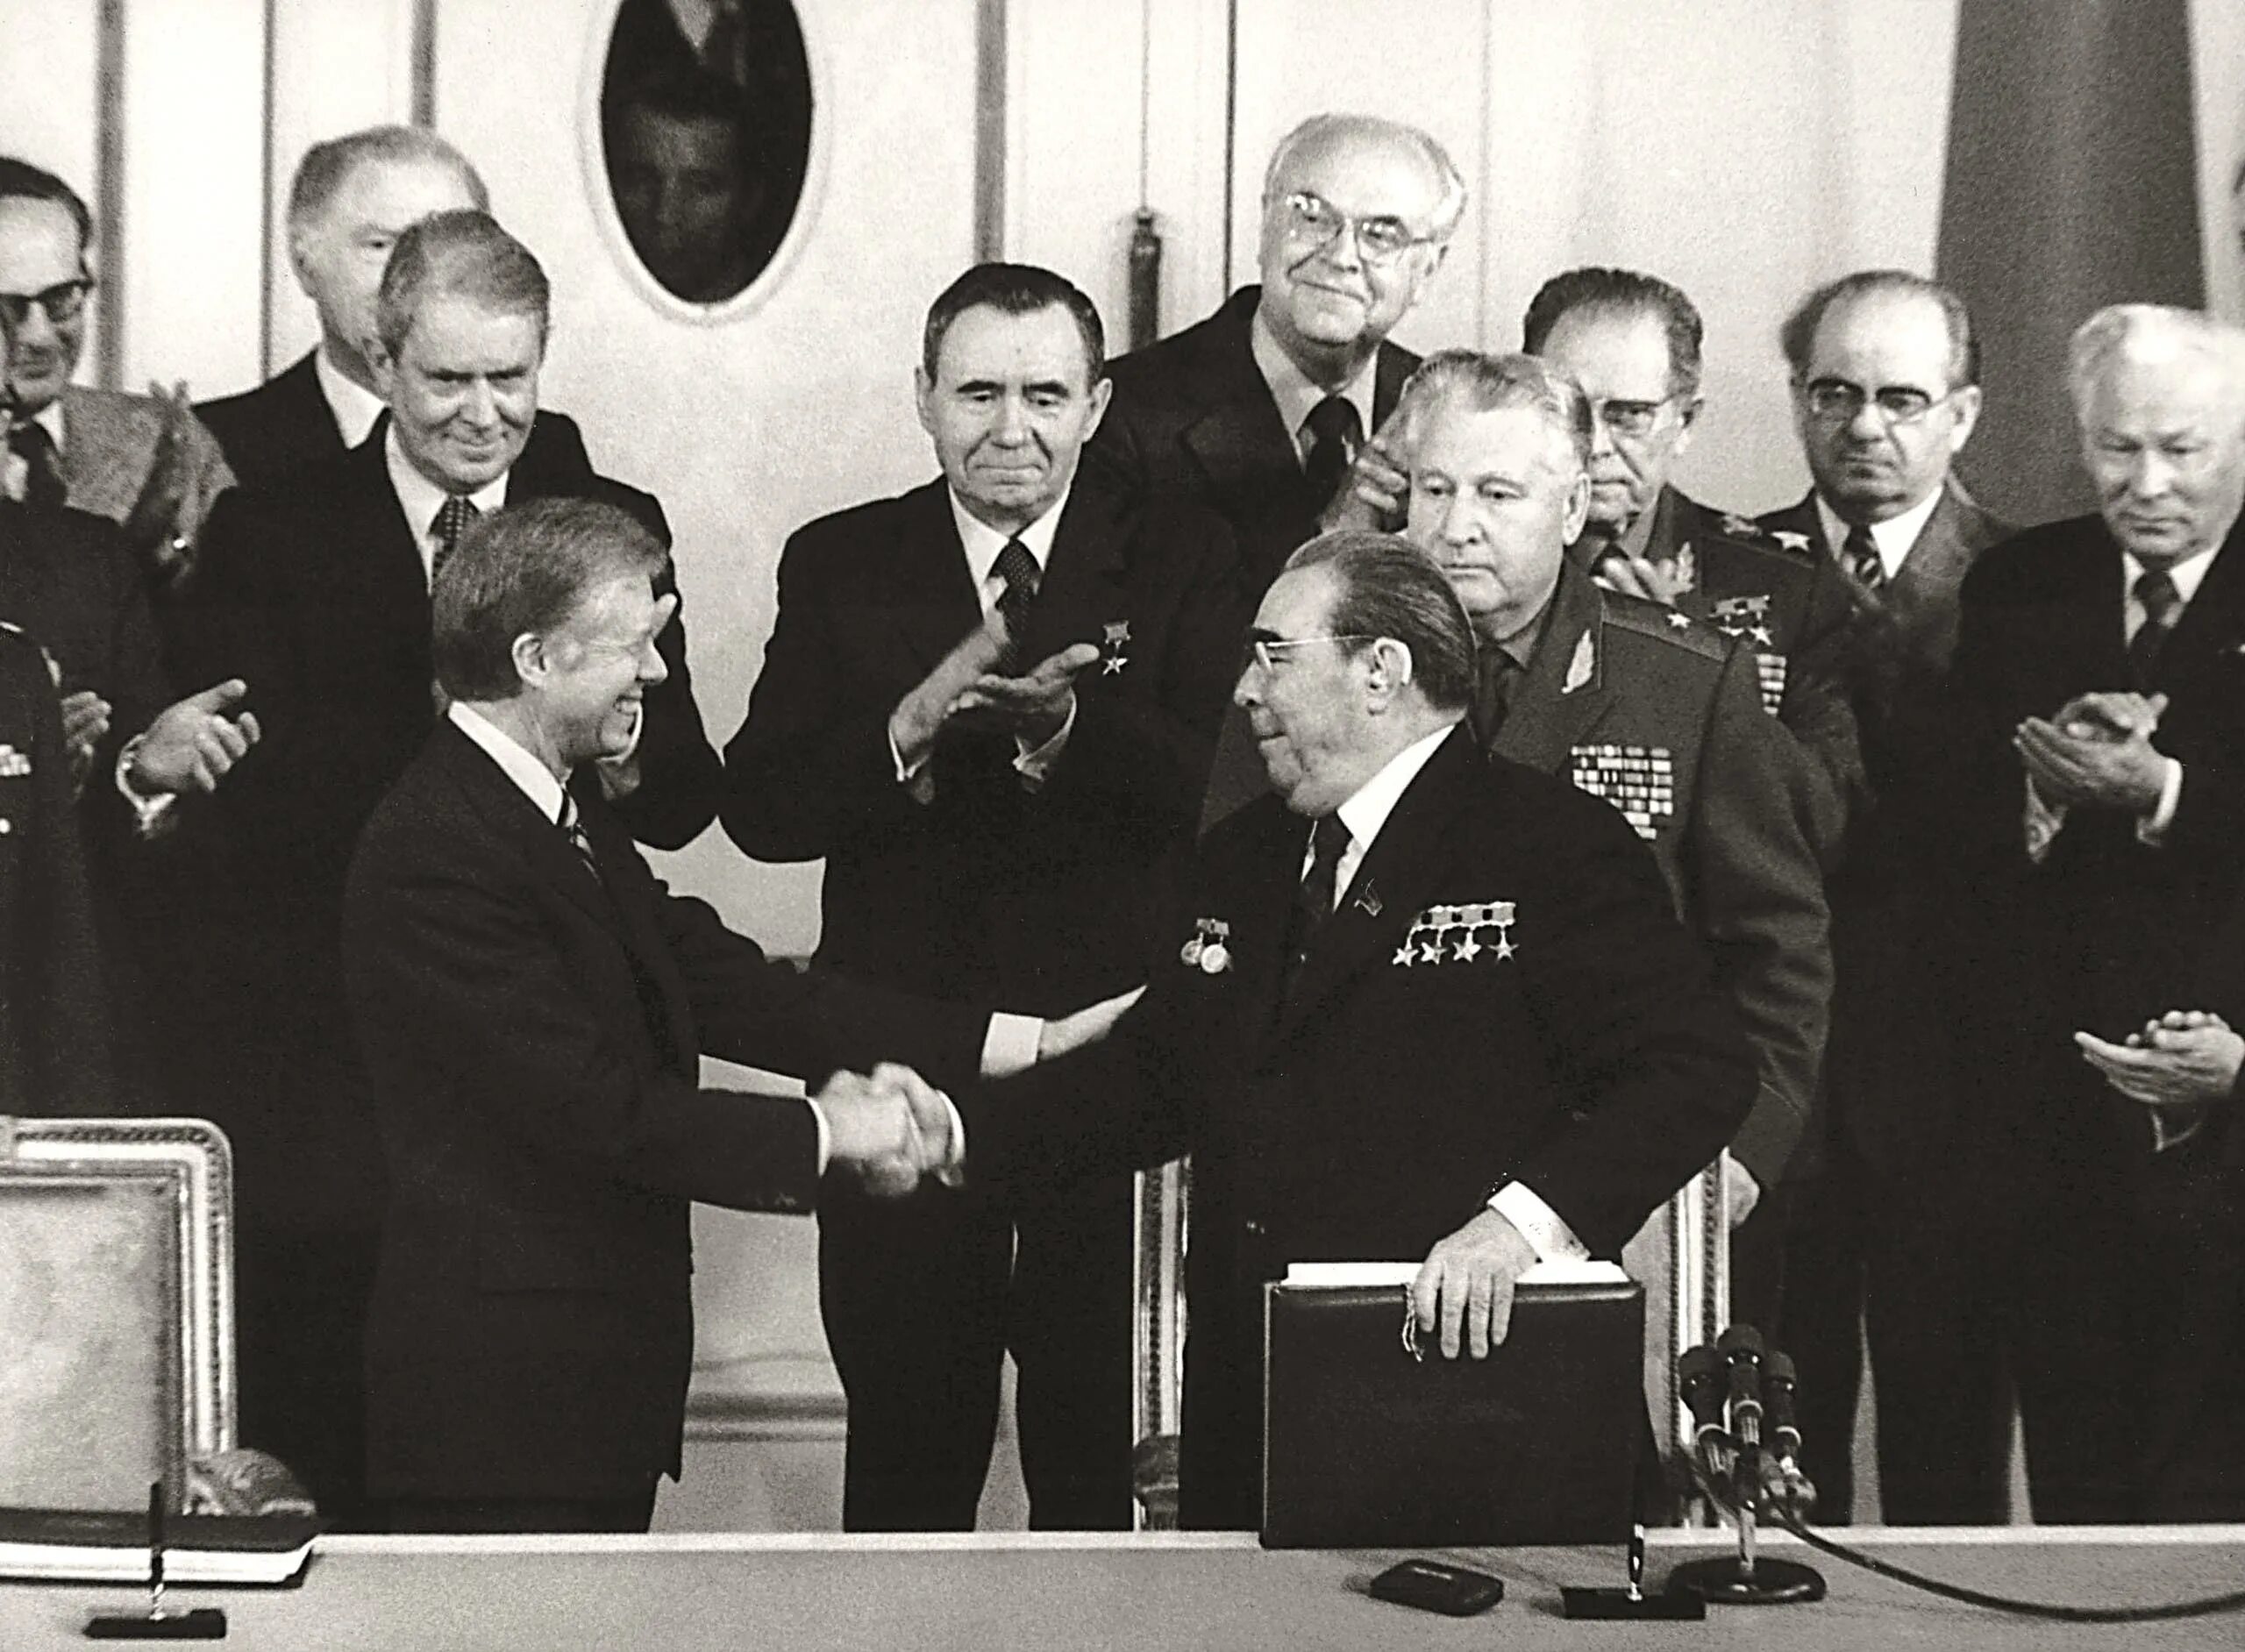 Достижение военно стратегического паритета с сша. Брежнев и Картер подписание осв 2. Подписание осв 1 Брежнев и Никсон. Осв-2 Брежнев и Картер. Осв-1 Брежнев Никсон 1972.